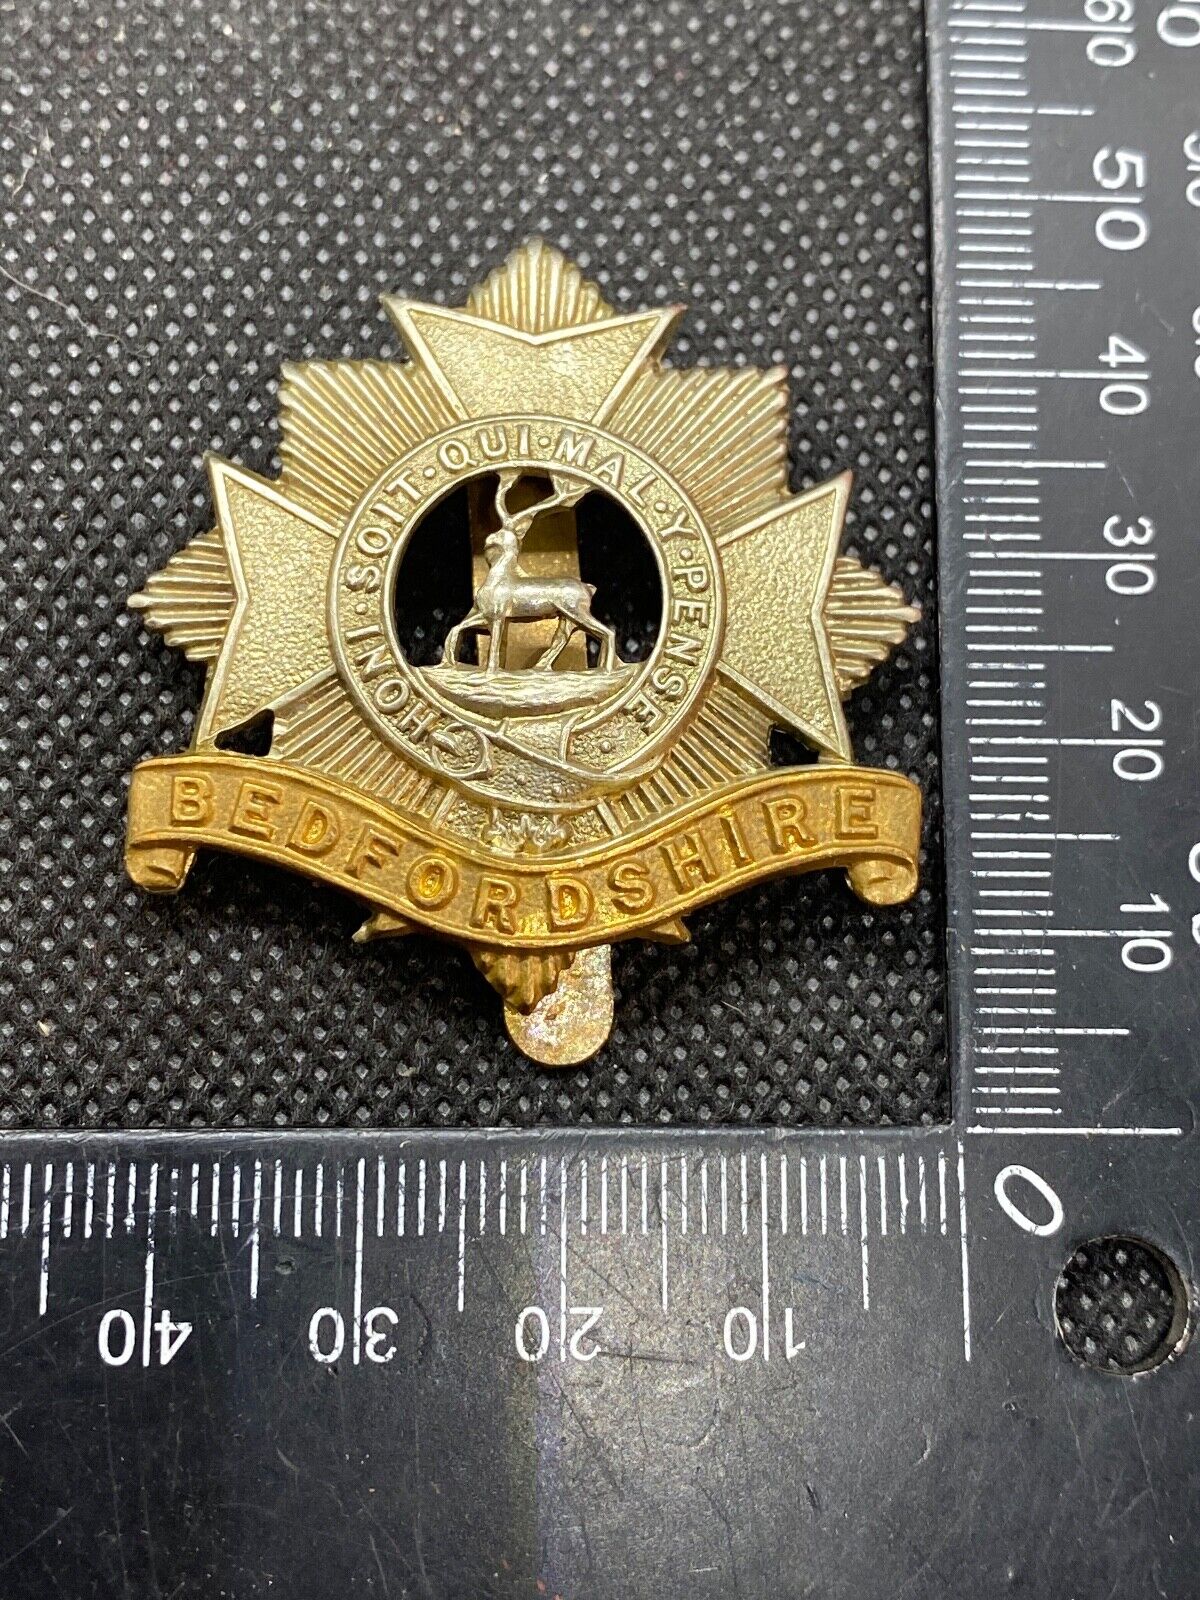 Original British Army Bedfordshire Regiment Cap Badge